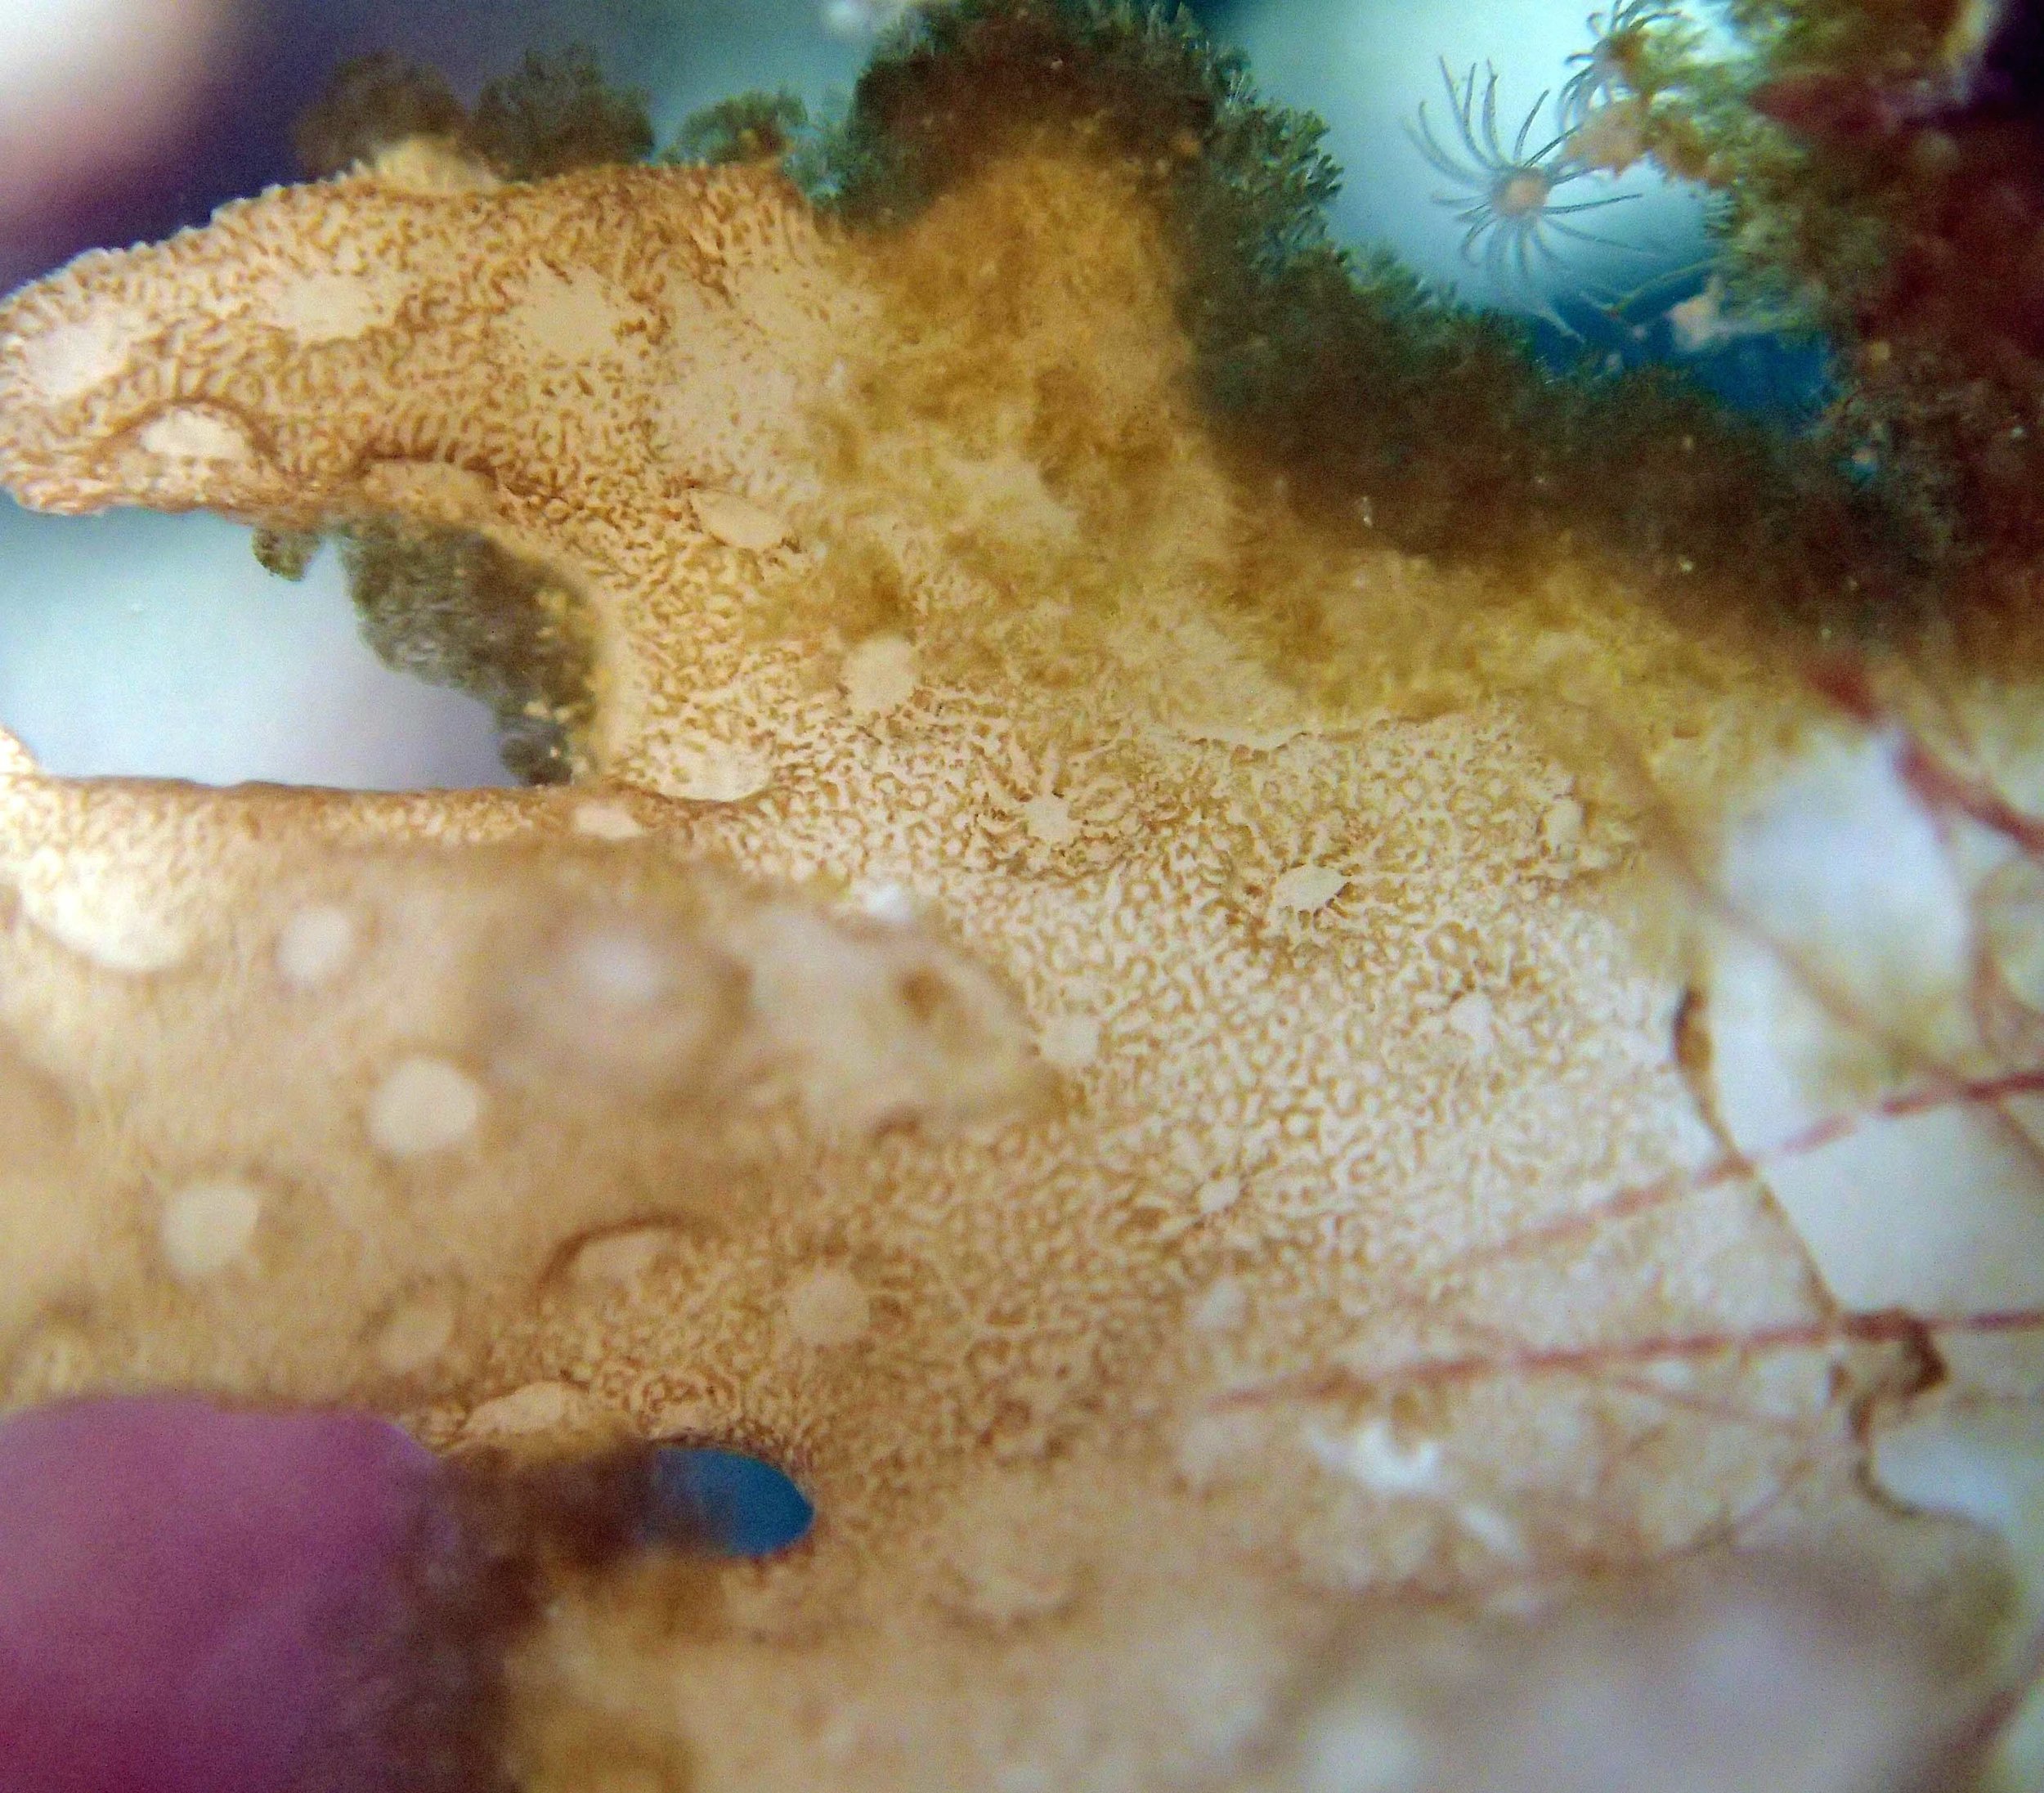 coral vs. algae macro.jpg